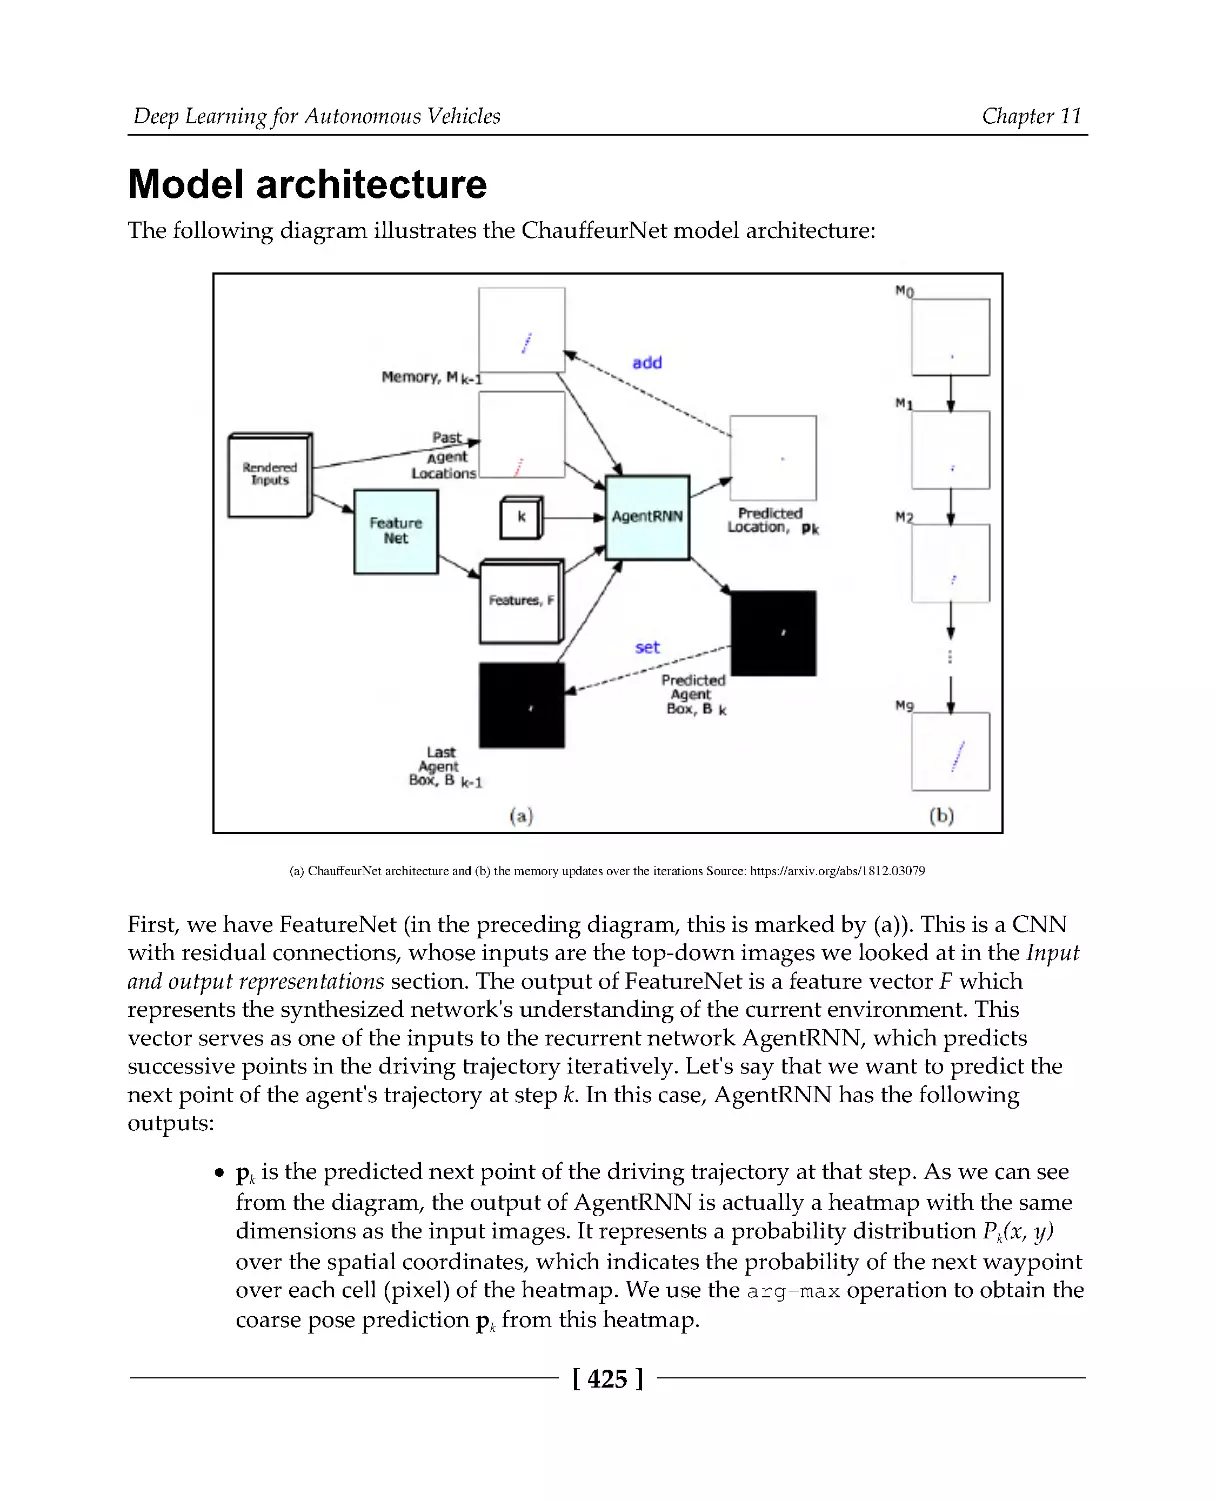 Model architecture